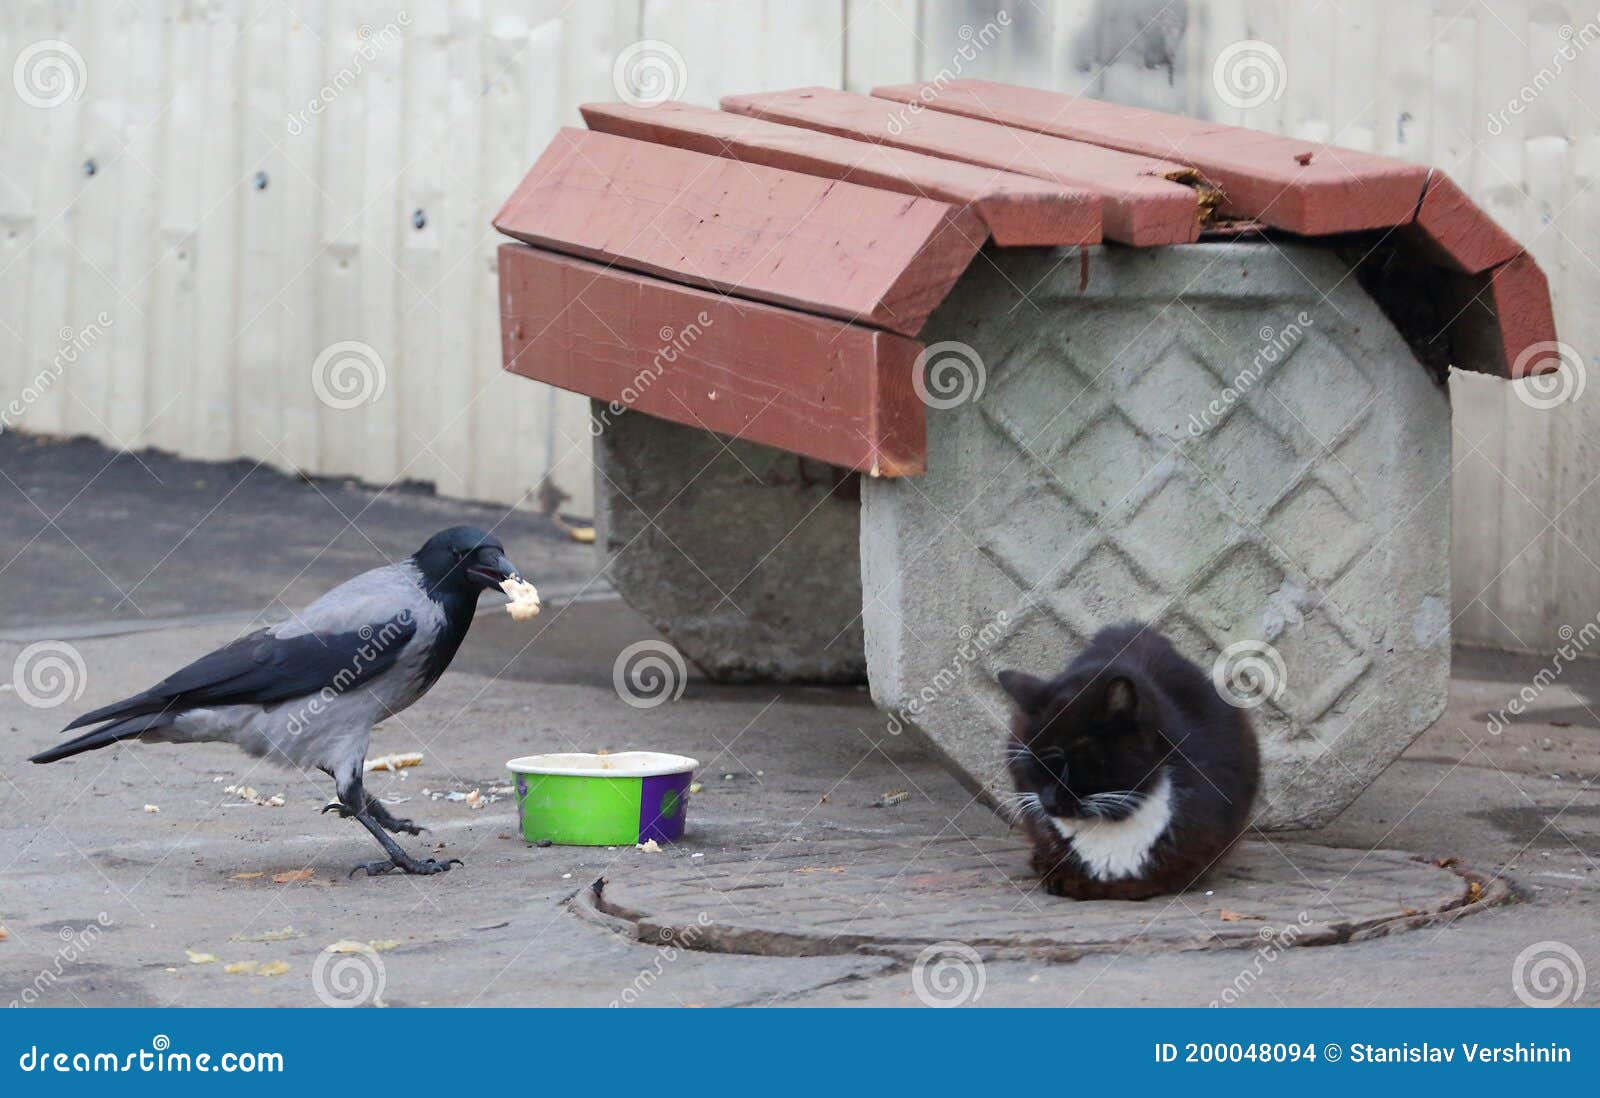 Le Corbeau Vole La Nourriture D'un Chat Qui Dort Photo stock - Image du  barrière, asphalte: 200048094